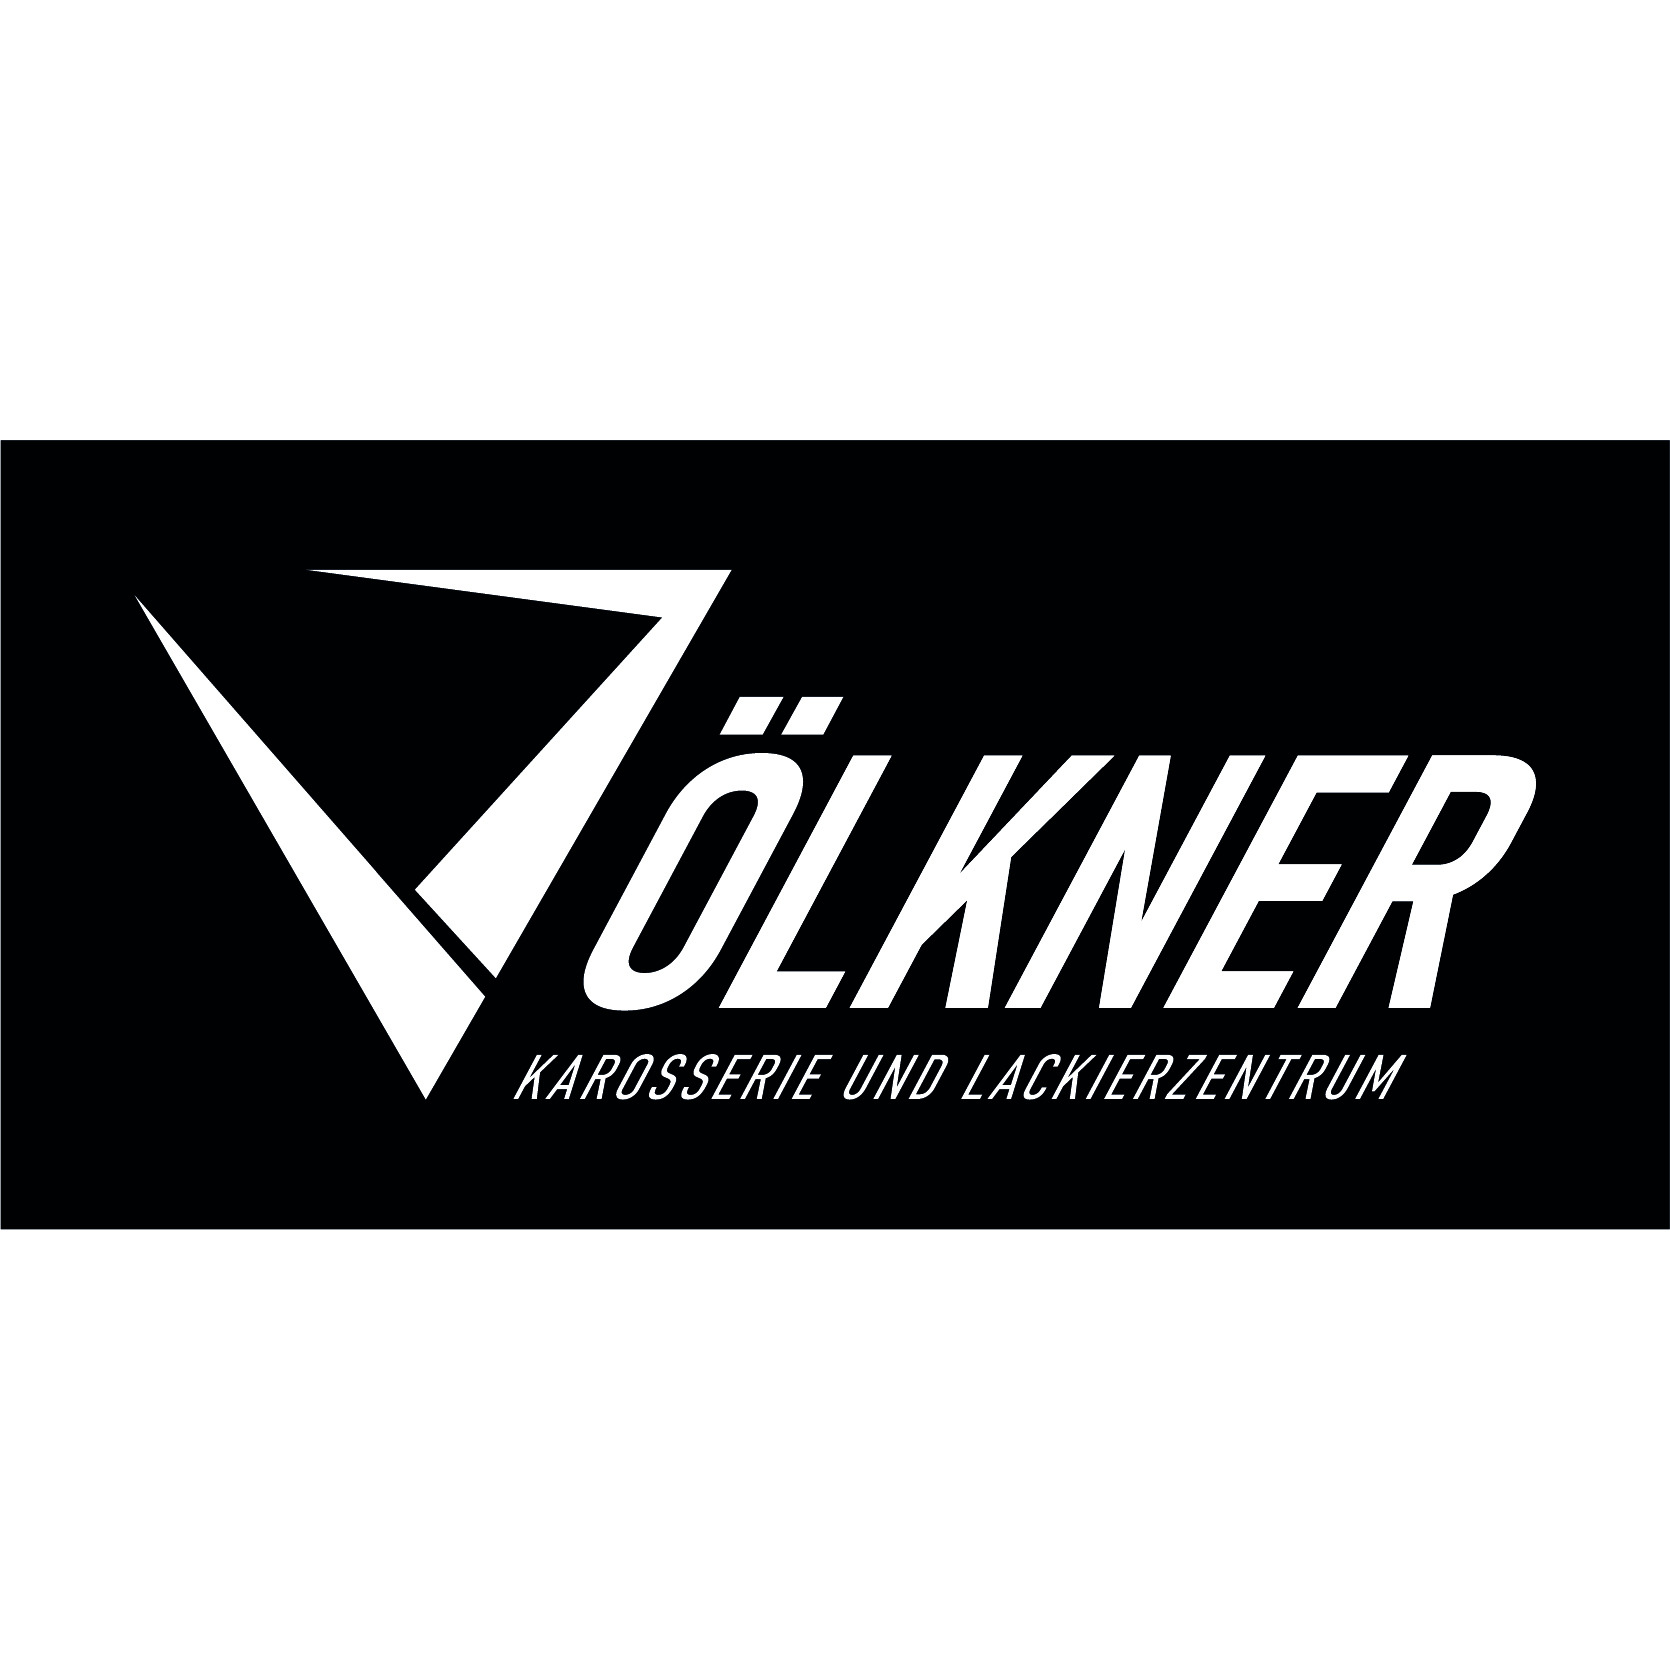 Völkner Karosserie und Lackierzentrum - Kevin Völkner